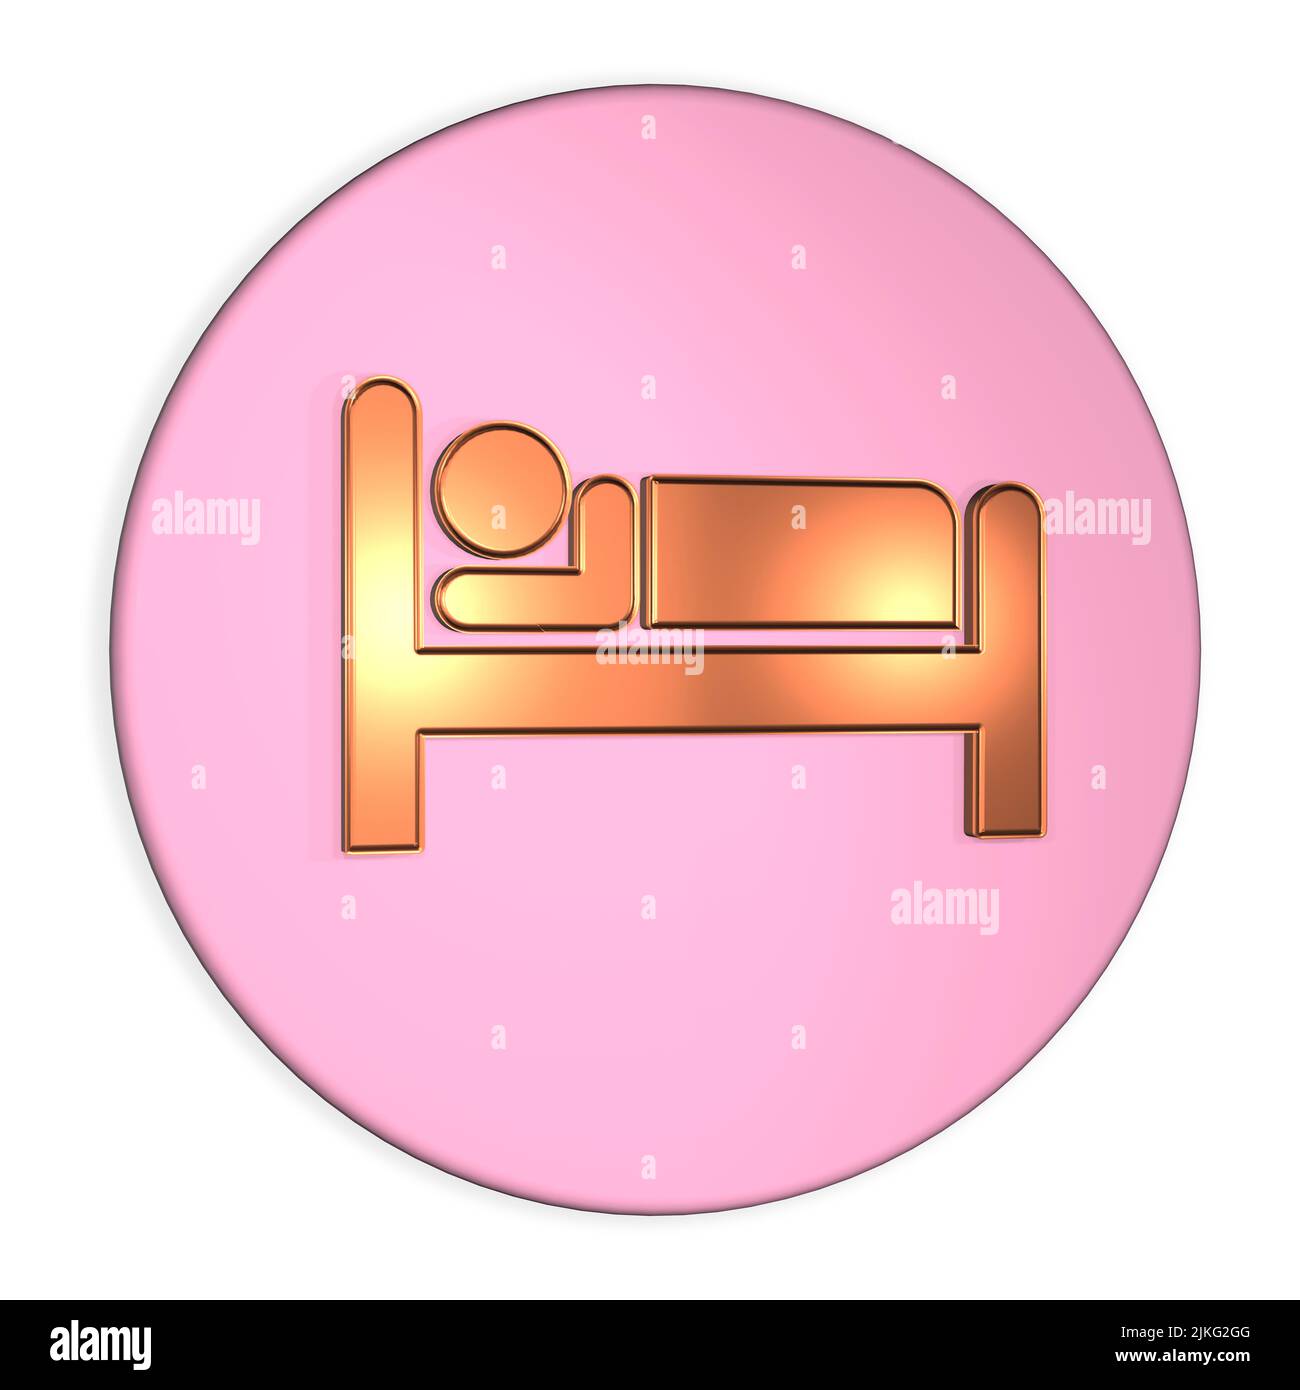 logotipo de diseño gráfico de sueño dormir concepto figura en la cama dormir parte del concepto de estilo de vida saludable Foto de stock